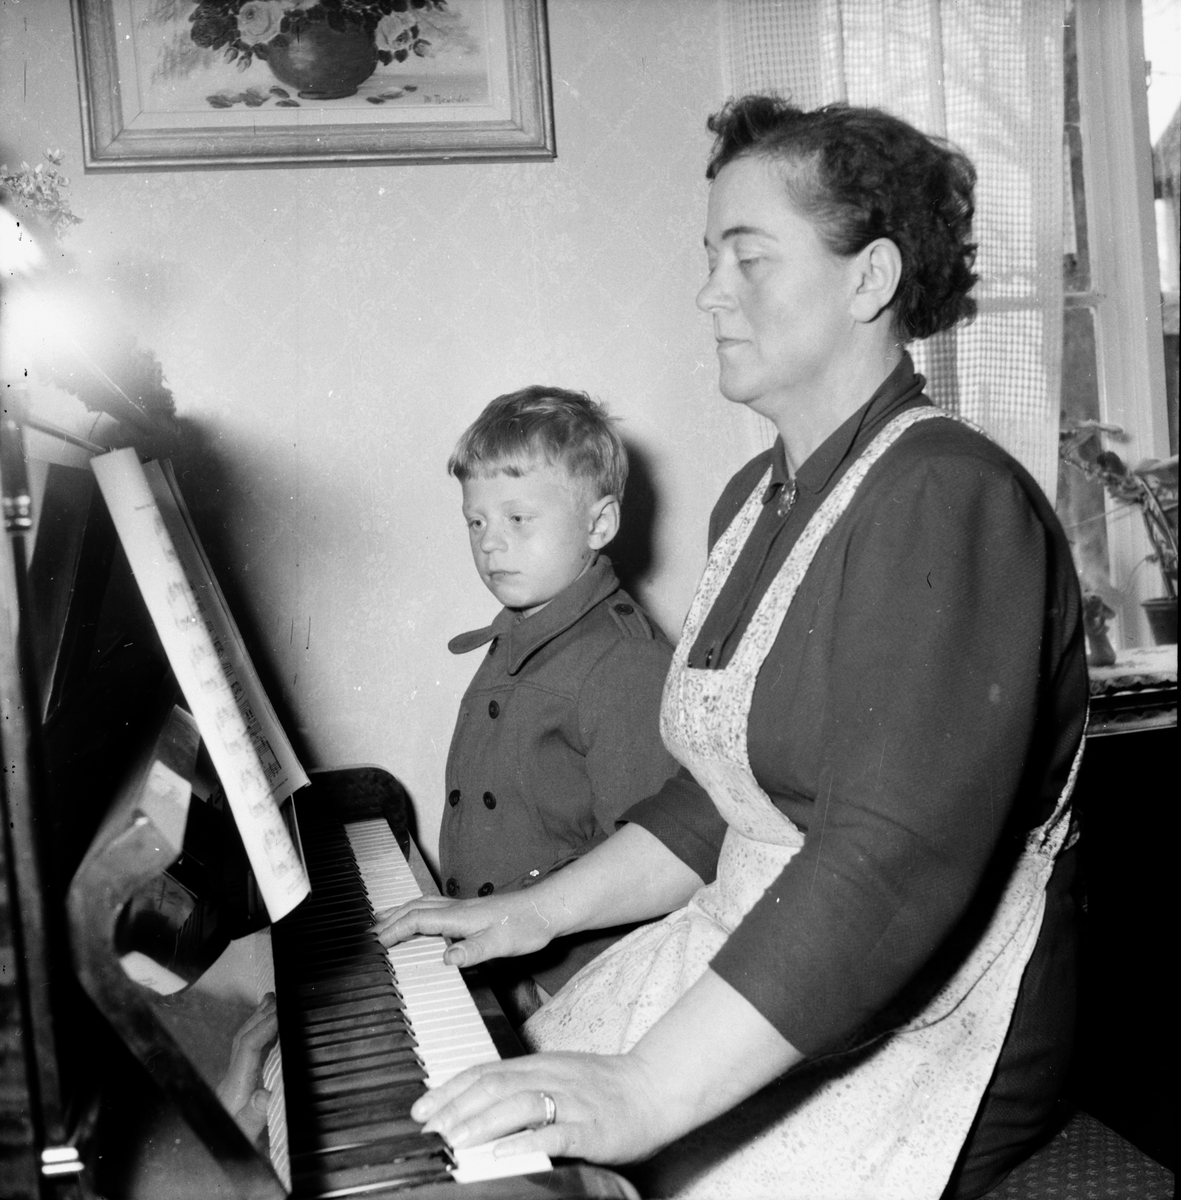 Familjen Bergström spelar piano.
Stråtjära, Hälsingland.